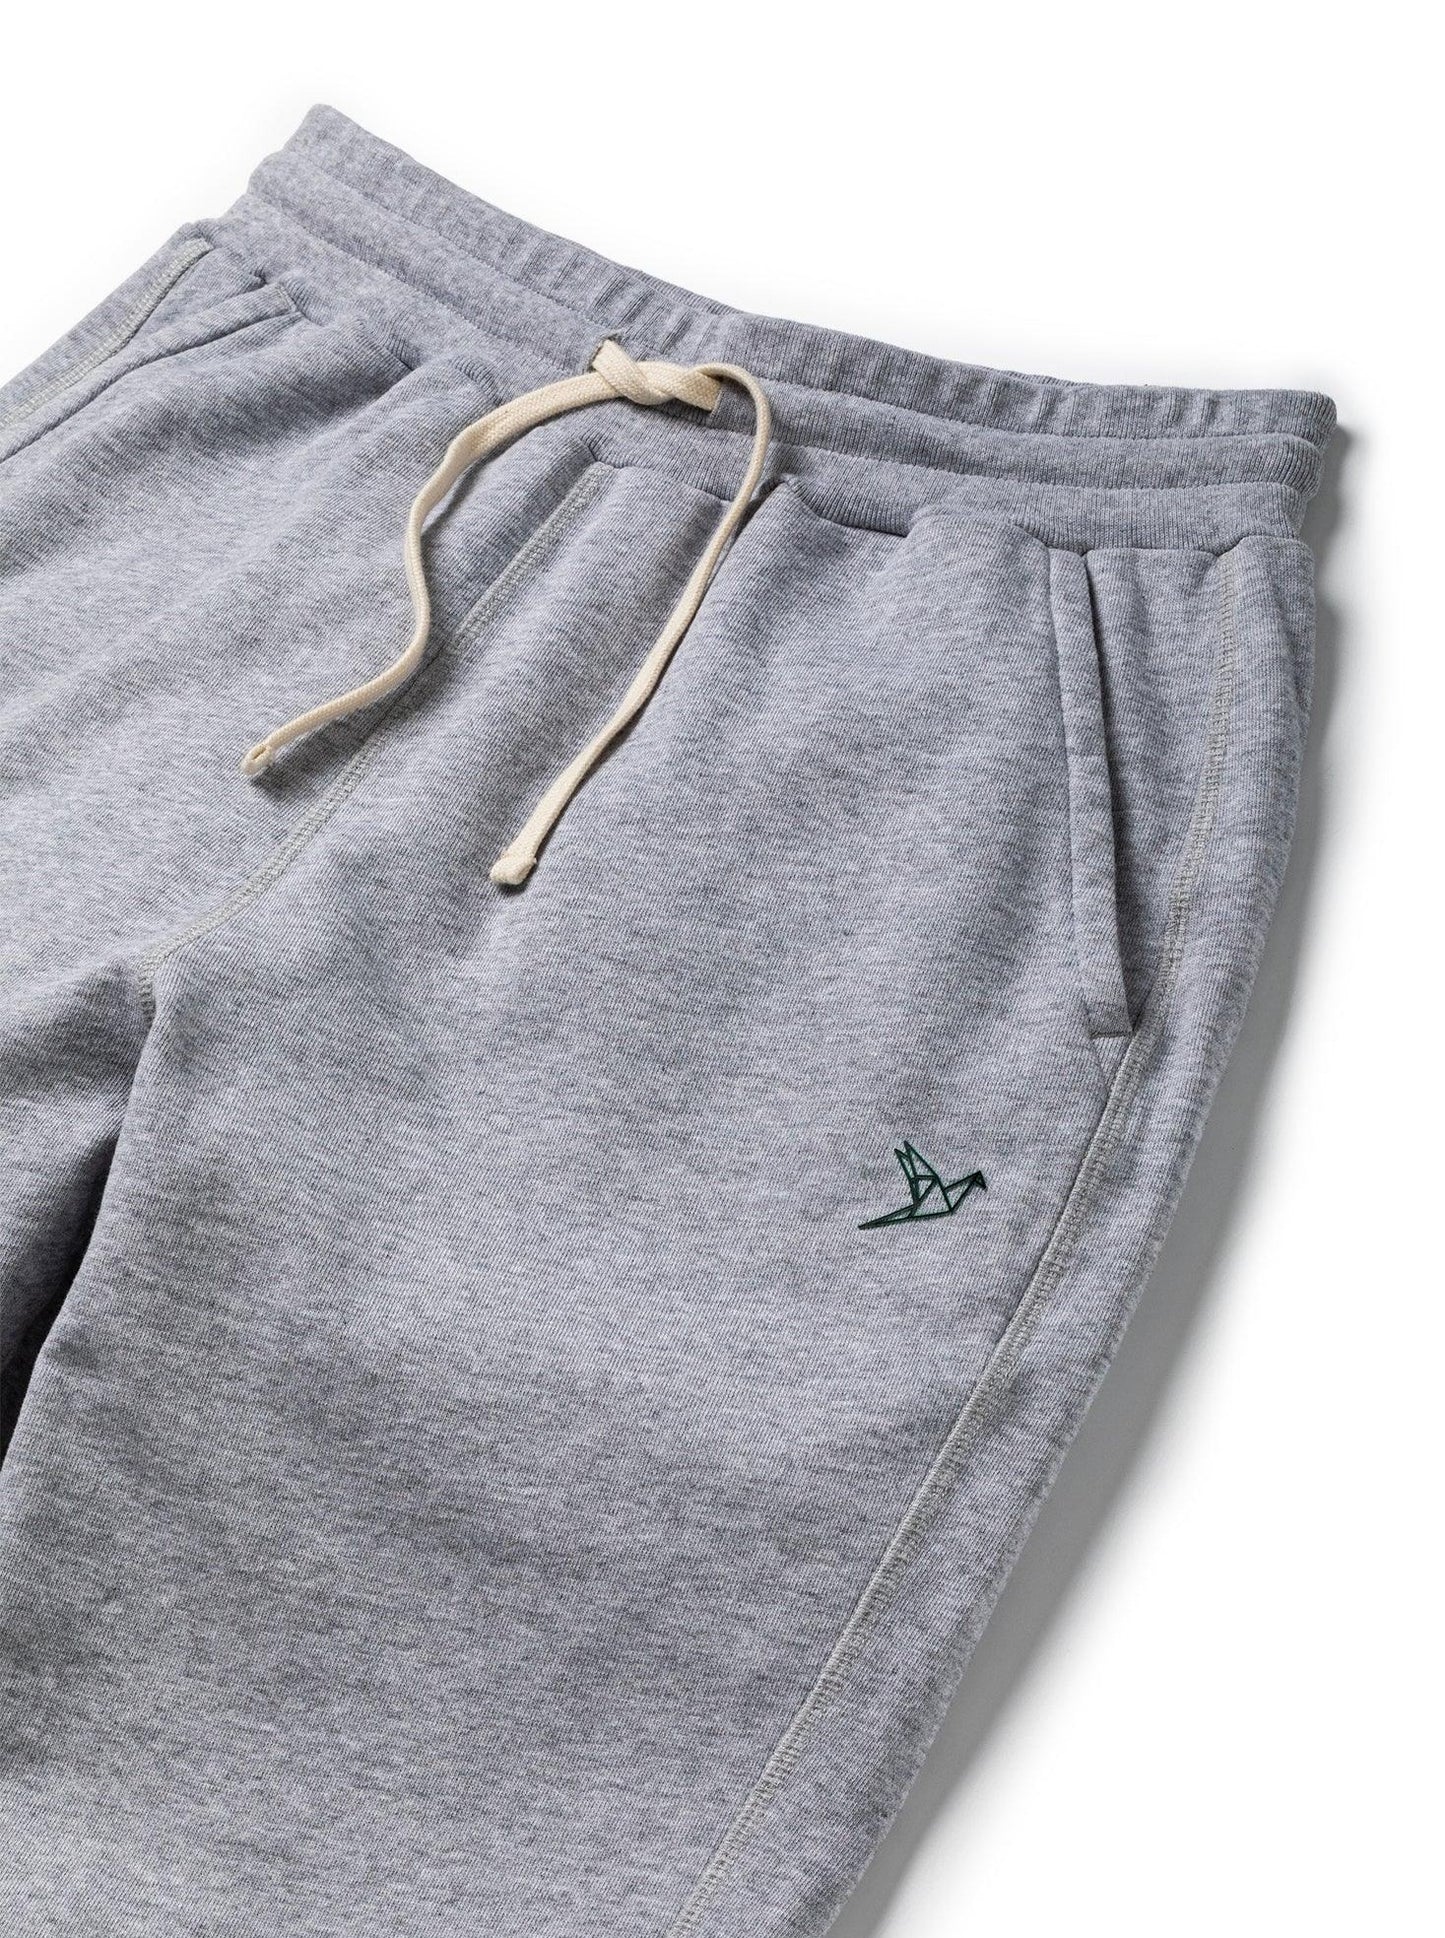 
                  
                    Women's Sweatpants - Grey - ORILABO Project
                  
                